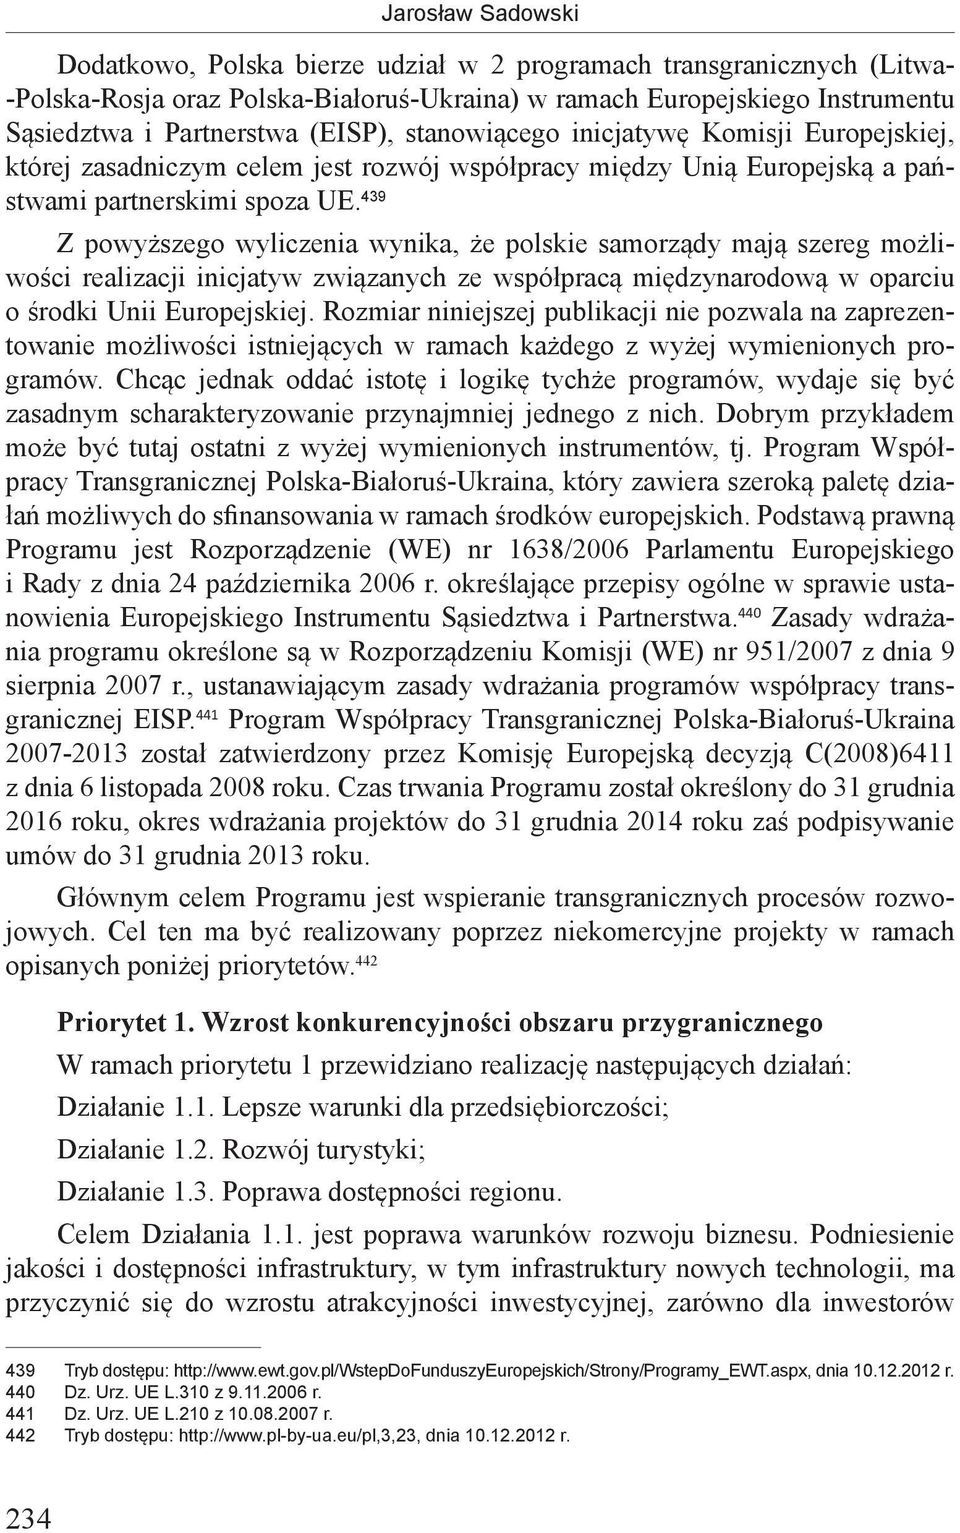 439 Z powyższego wyliczenia wynika, że polskie samorządy mają szereg możliwości realizacji inicjatyw związanych ze współpracą międzynarodową w oparciu o środki Unii Europejskiej.